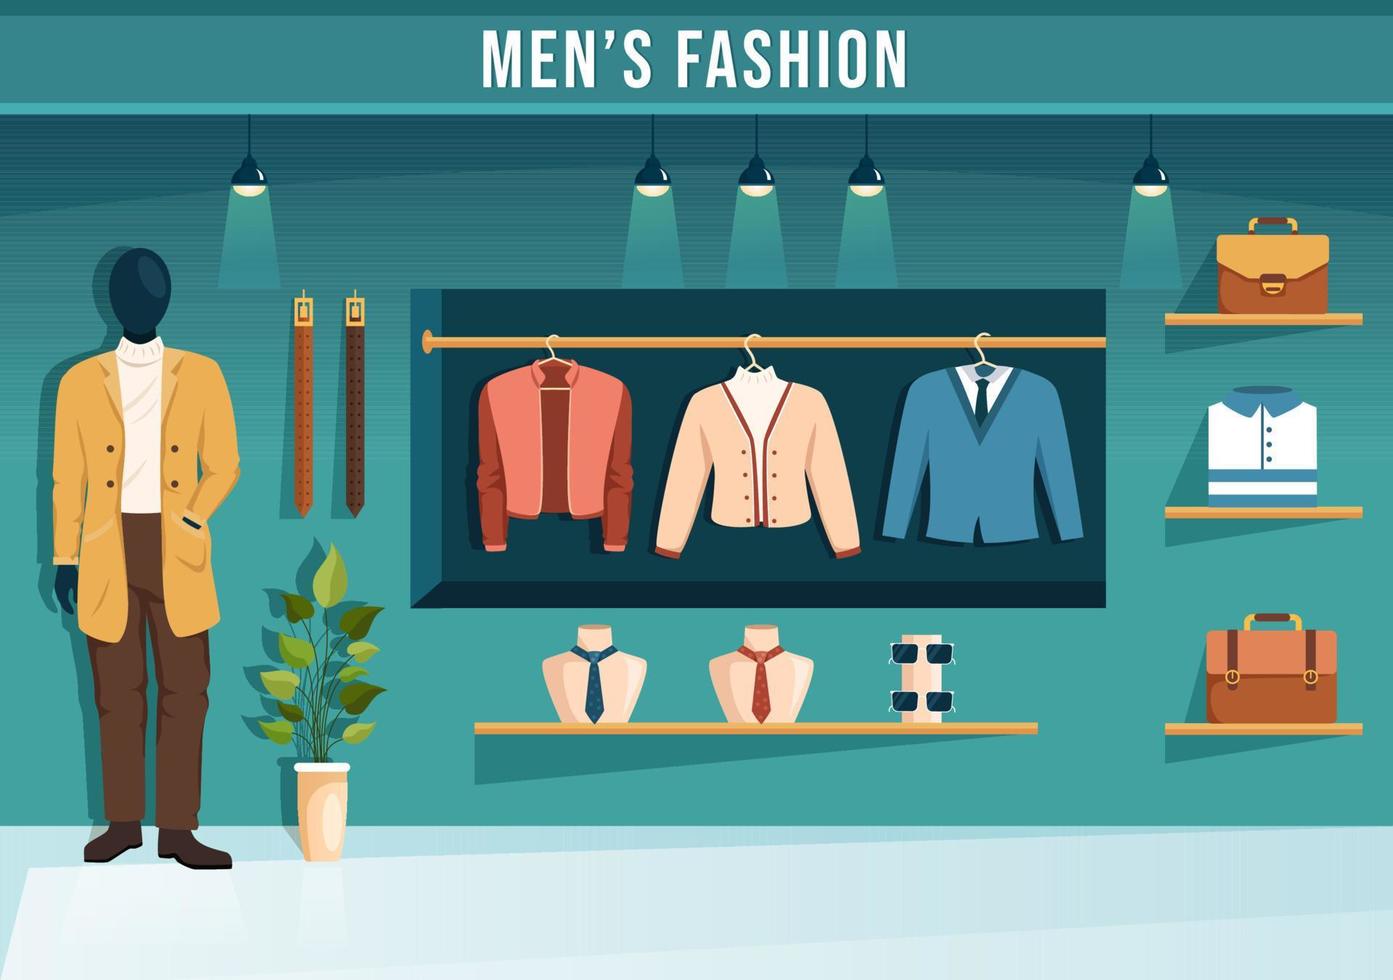 hombres de moda y atuendo de hombre de moda en boutique interior o tienda de ropa para comprar en dibujos animados planos dibujados a mano ilustración de plantillas vector